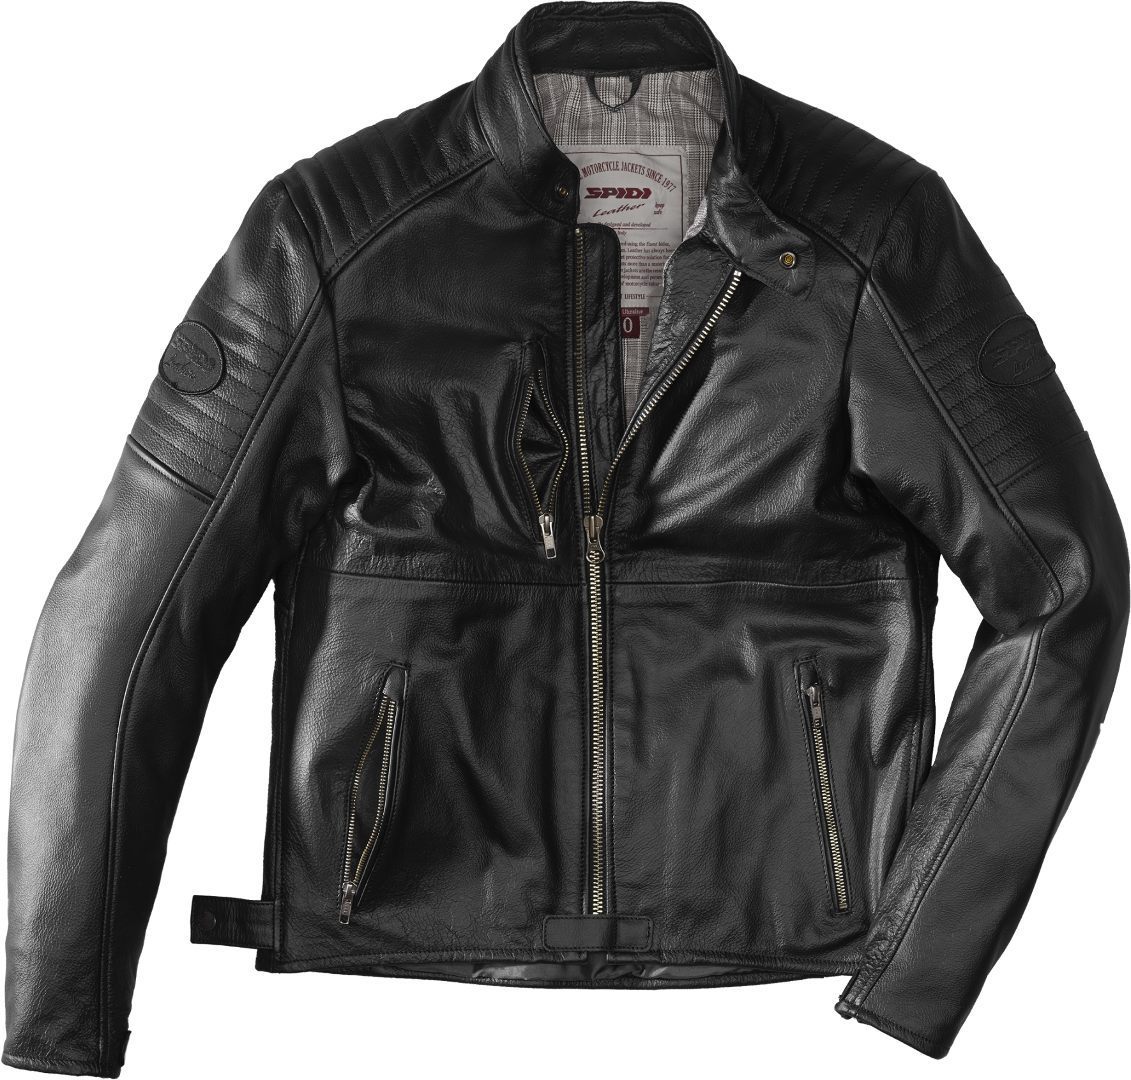 Image of Spidi Clubber Extreme Jacket Black Size 50 ID 8030161356144